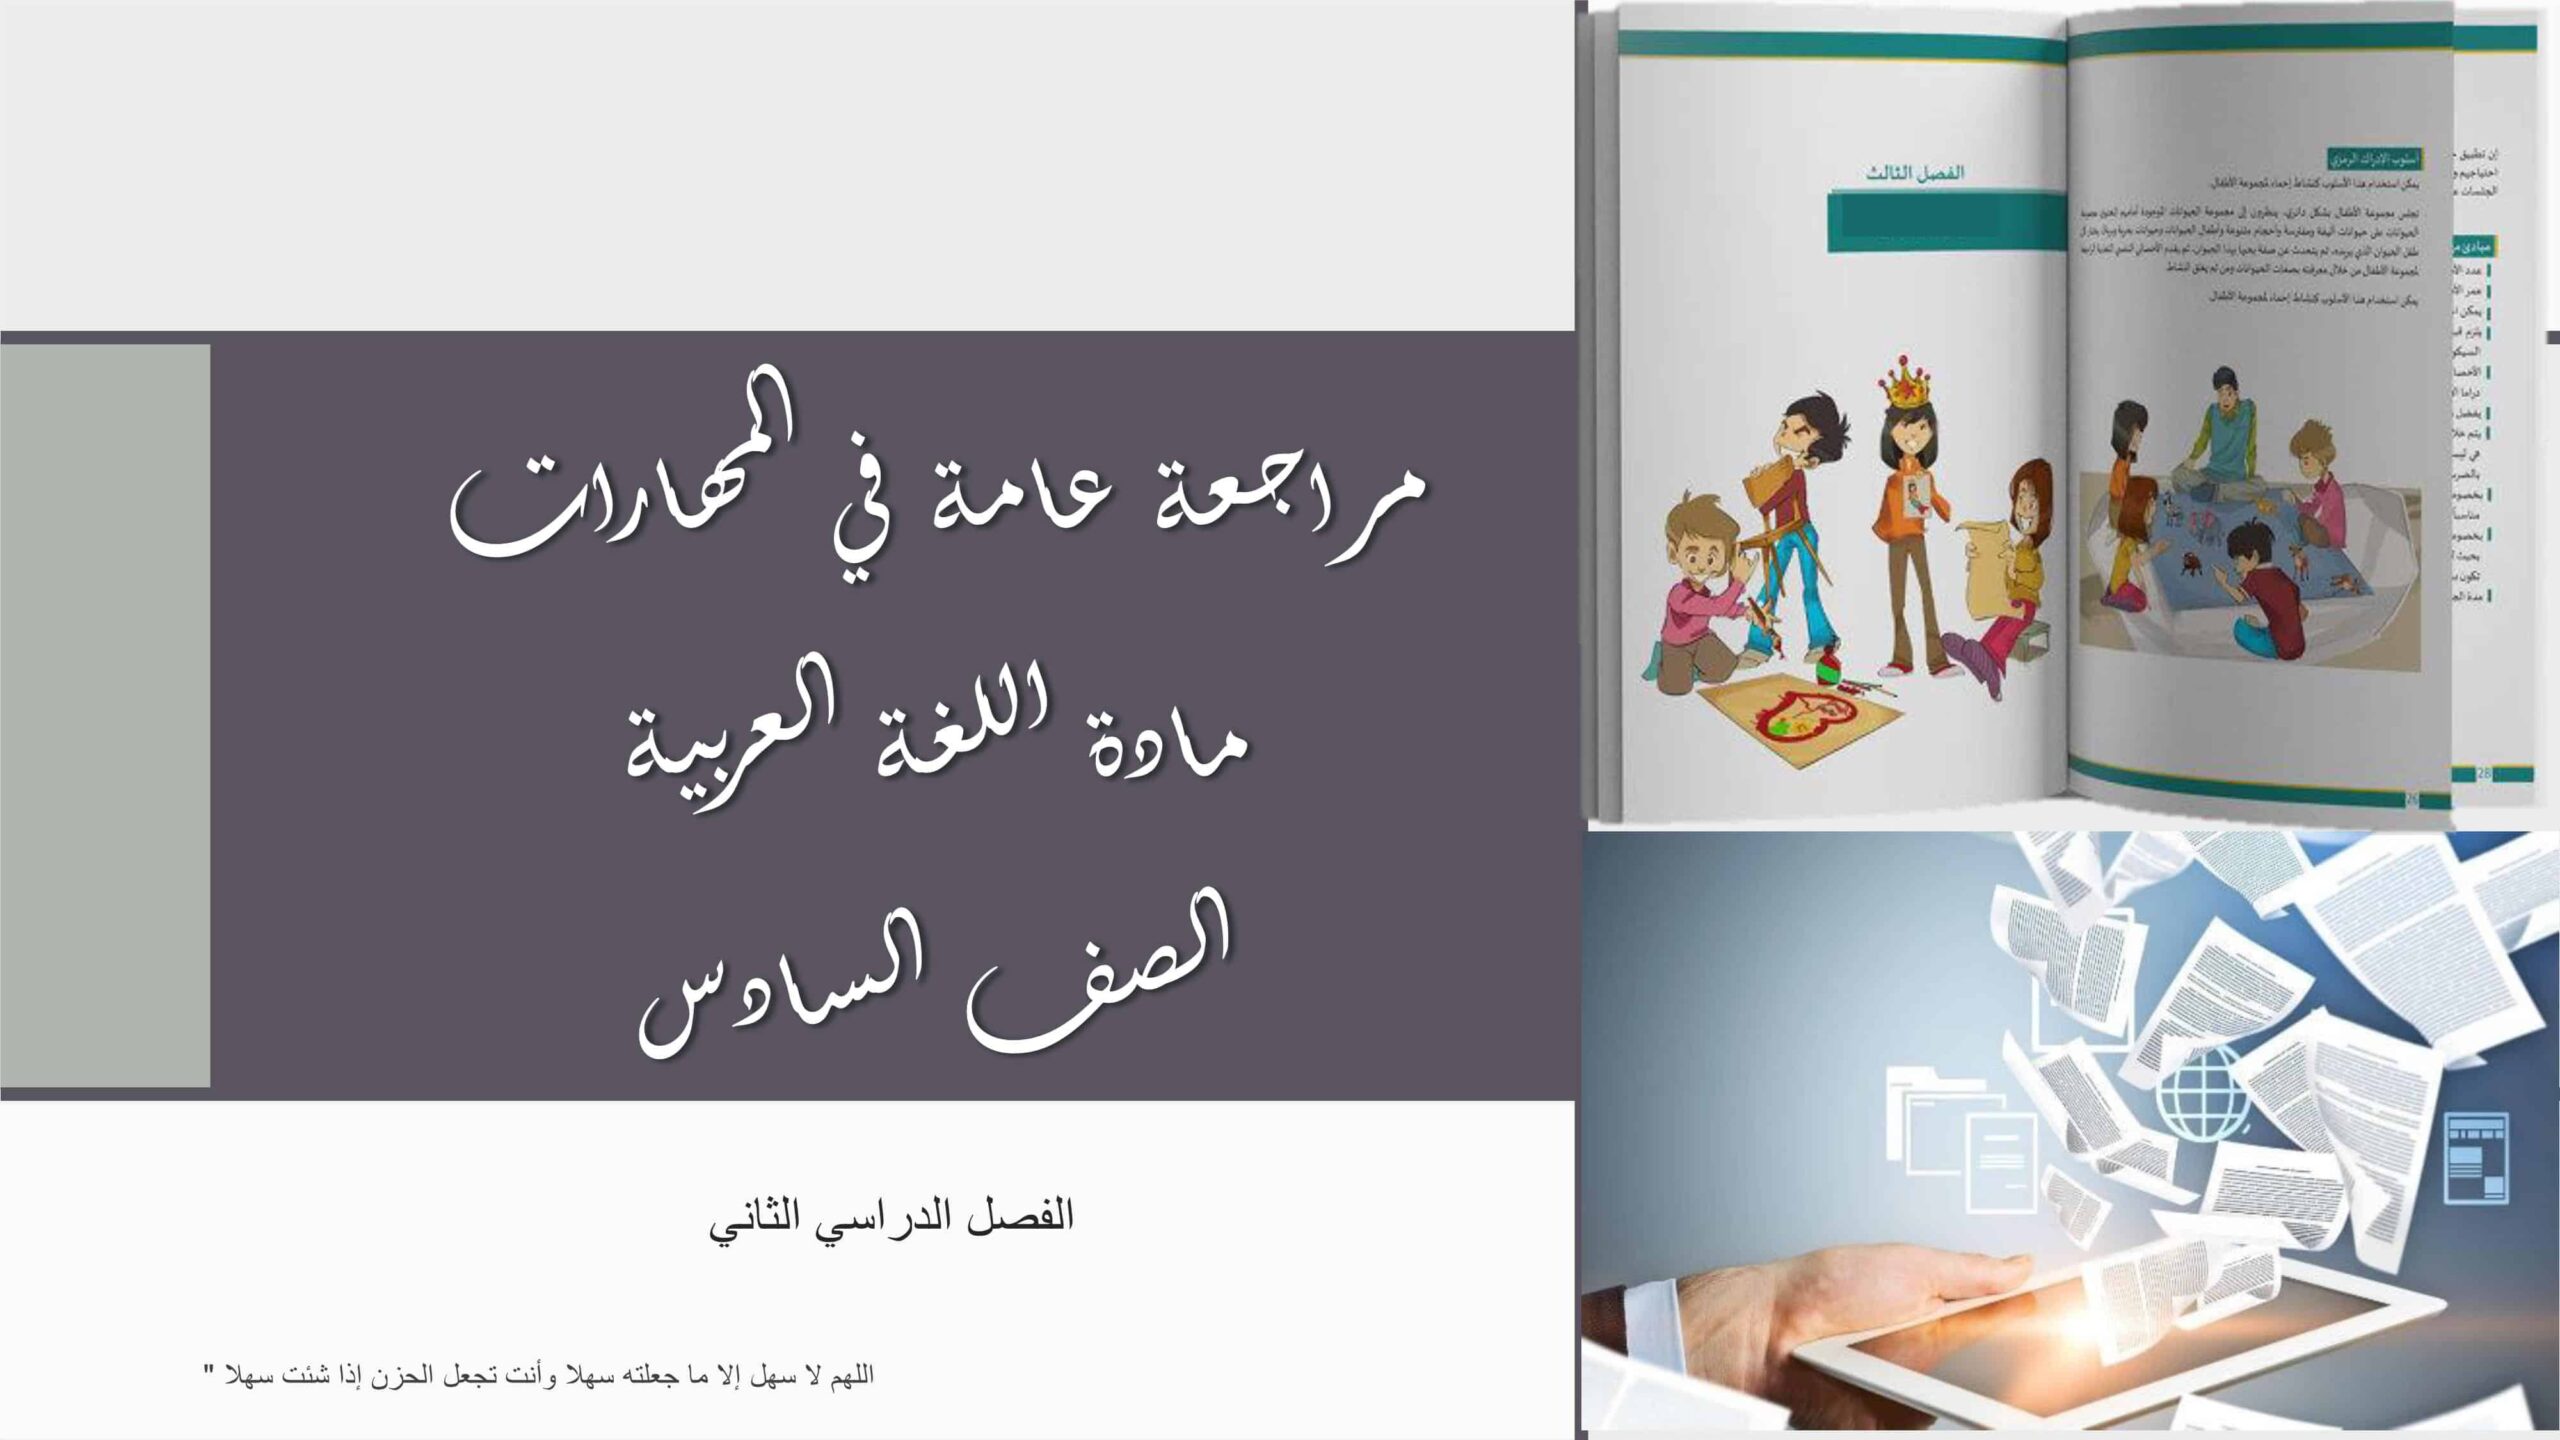 مراجعة عامة في المهارات اللغة العربية الصف السادس